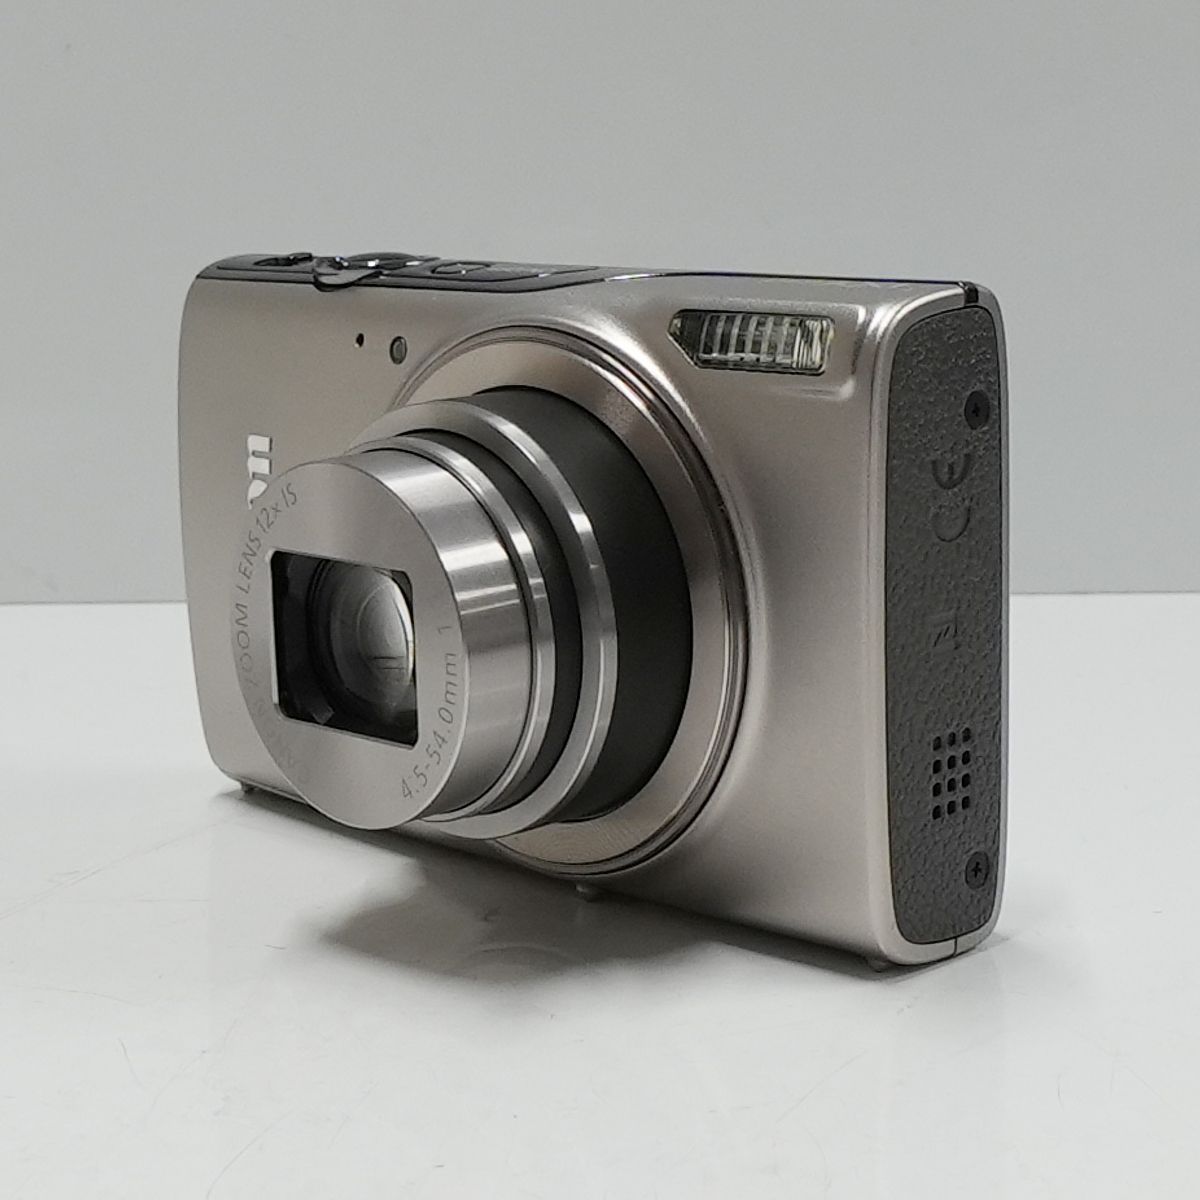 Canon IXY 650 USED超美品 デジタルカメラ 本体+バッテリー 光学12倍